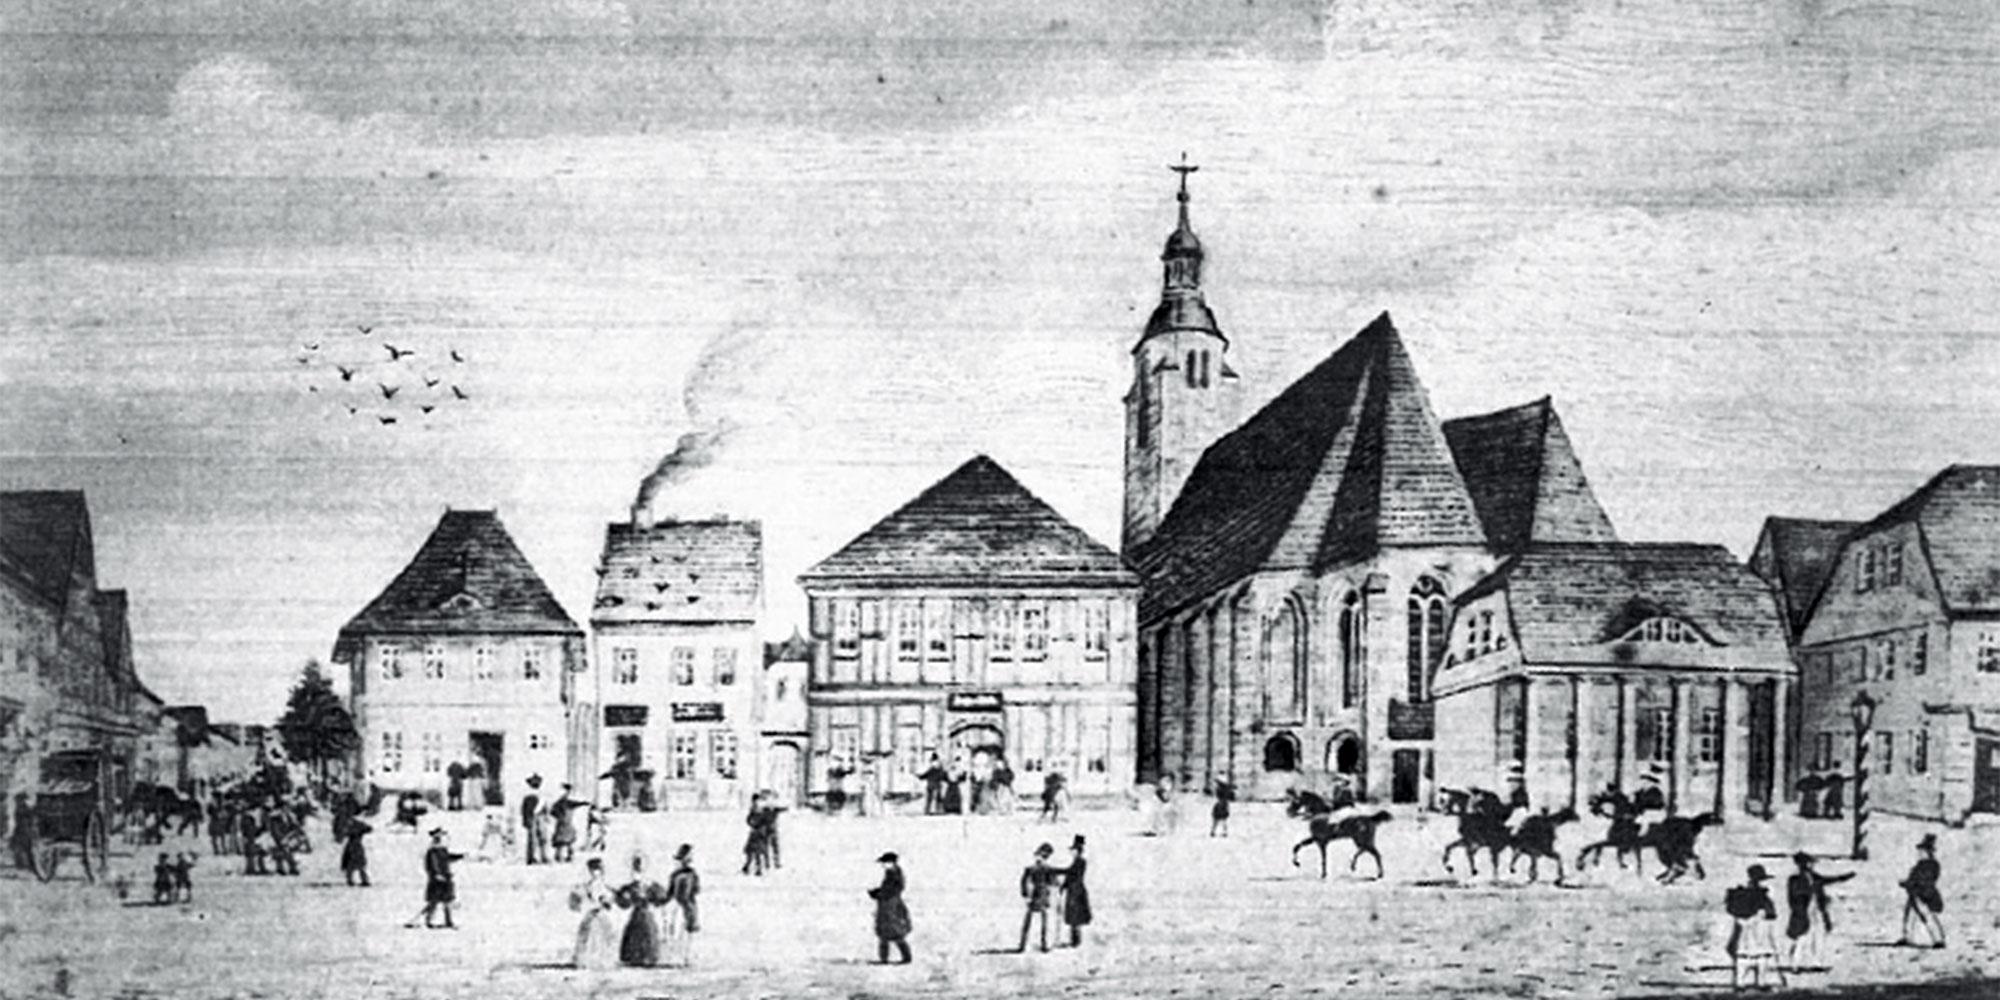 Town hall and surroundings in 1837; source: Beelitz town council (ed.): "Beelitz in der Mark Stadtrundgang" p. 11